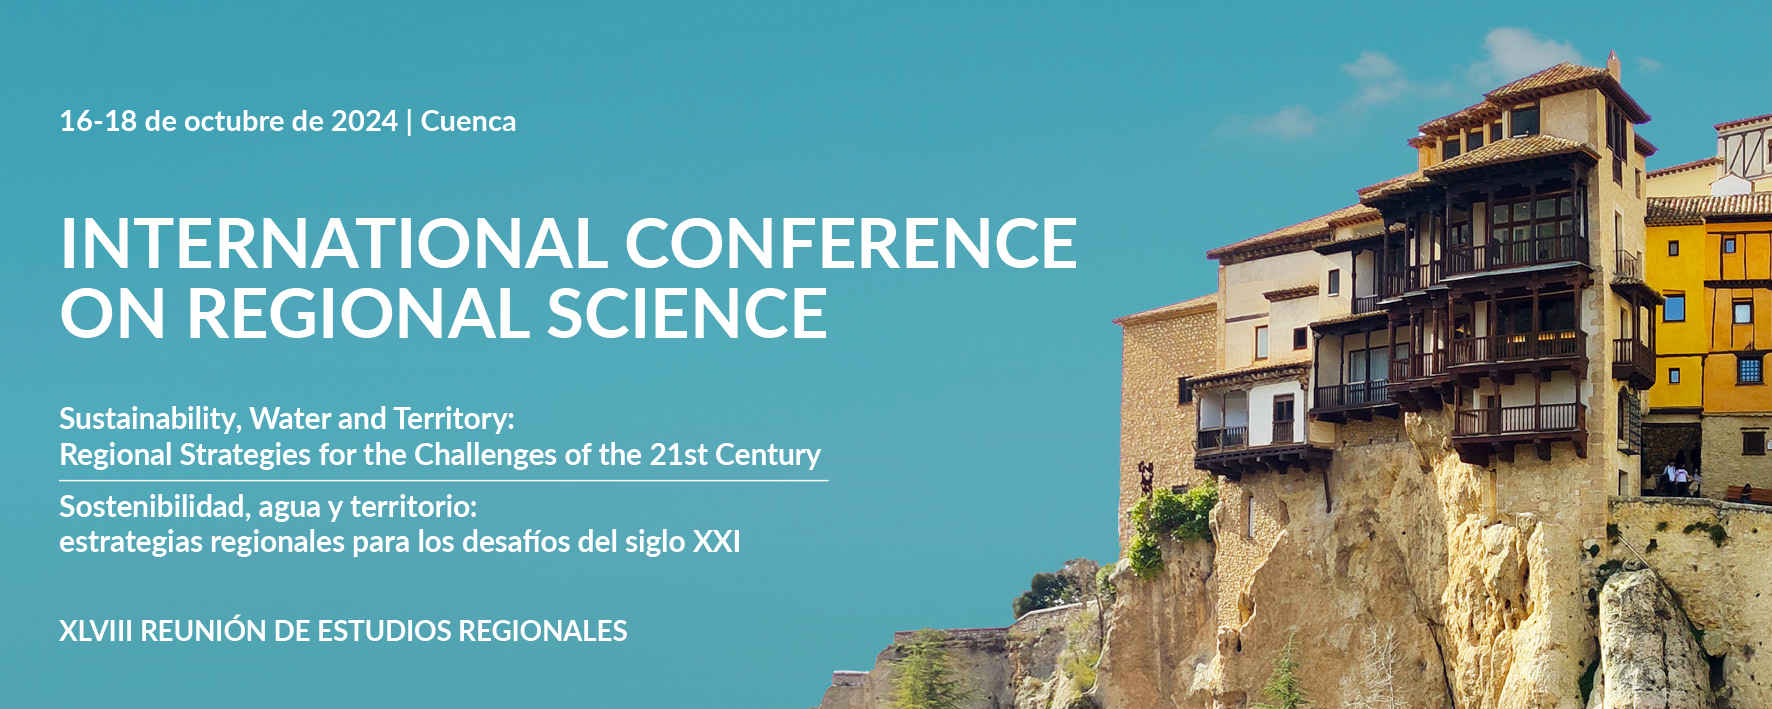 Finalización del plazo para organizar Special Sessions en la XLVIII Reunión de Estudios Regionales – Cuenca, 16-18 de octubre de 2024